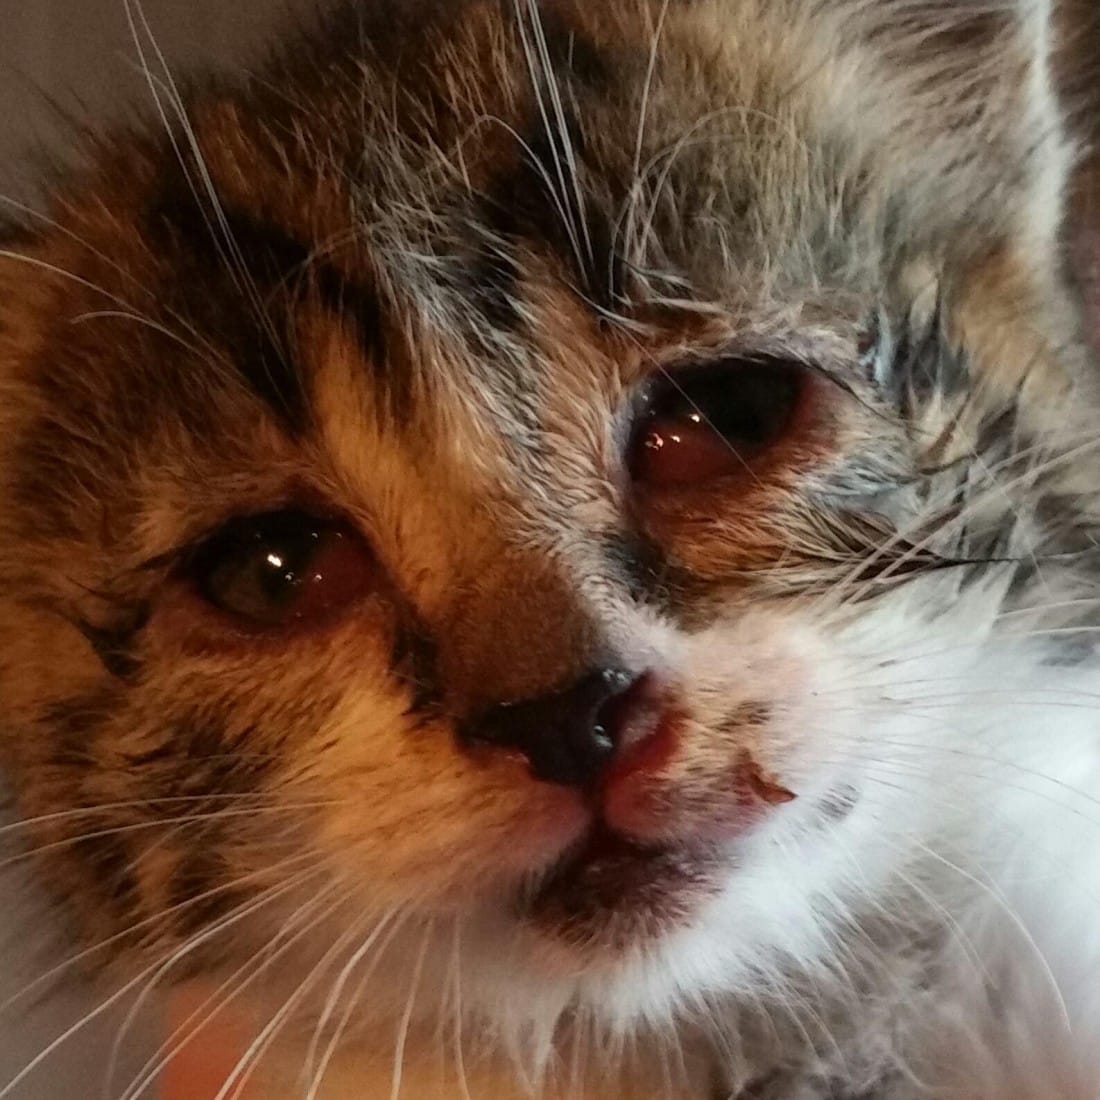 Tiny sick kitten dumped by roadside